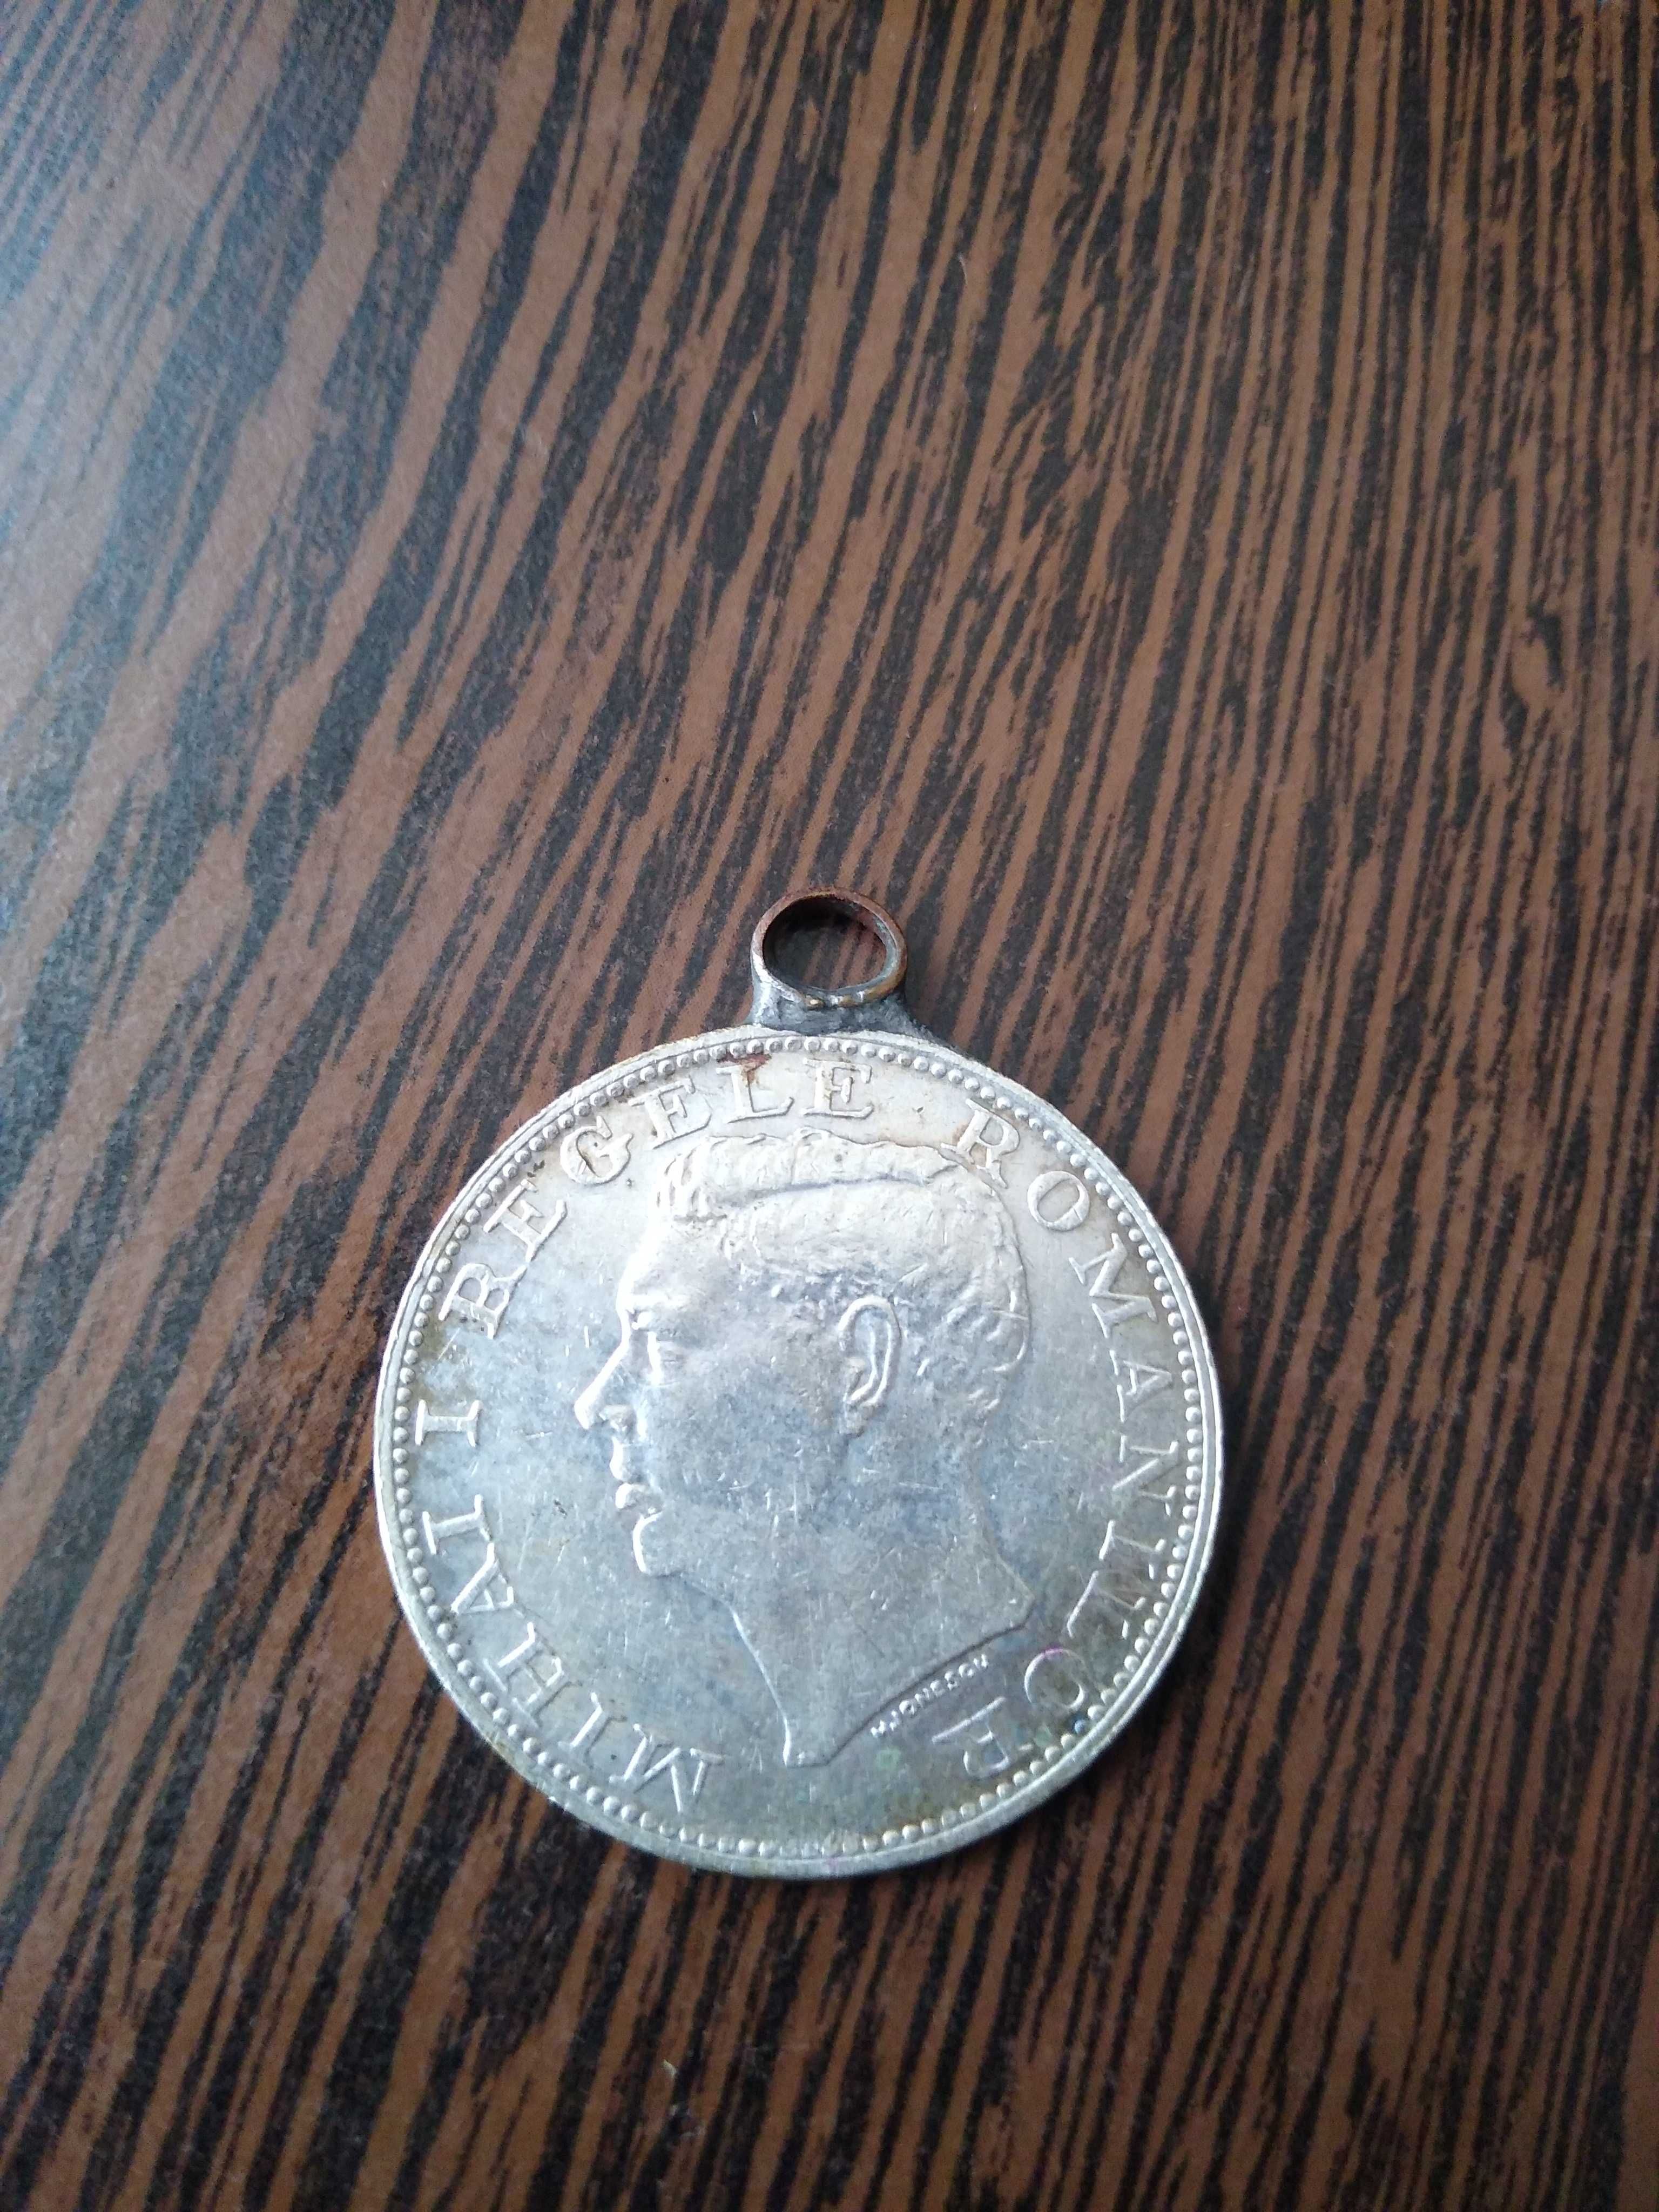 3 monede valoroase, an emitere 1914, 1943 respectiv 1944